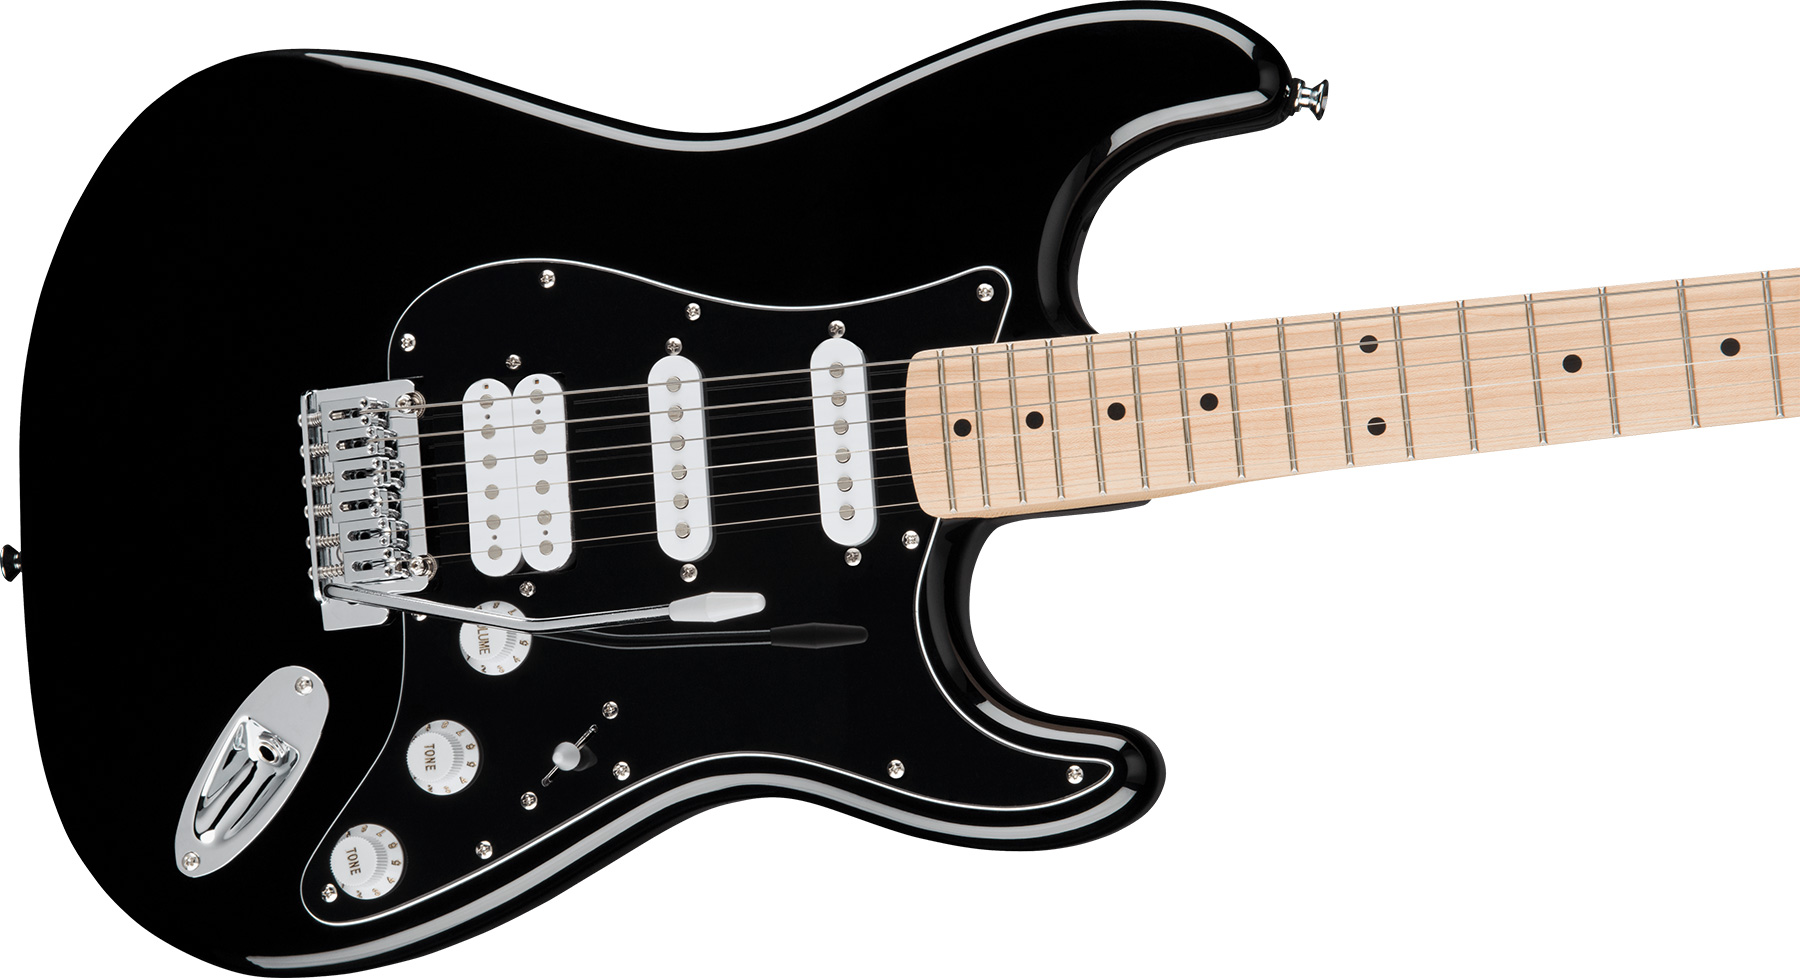 Squier Strat Affinity Black Pickguard Fsr Ltd Hss Trem Lau - Black - Str shape electric guitar - Variation 2